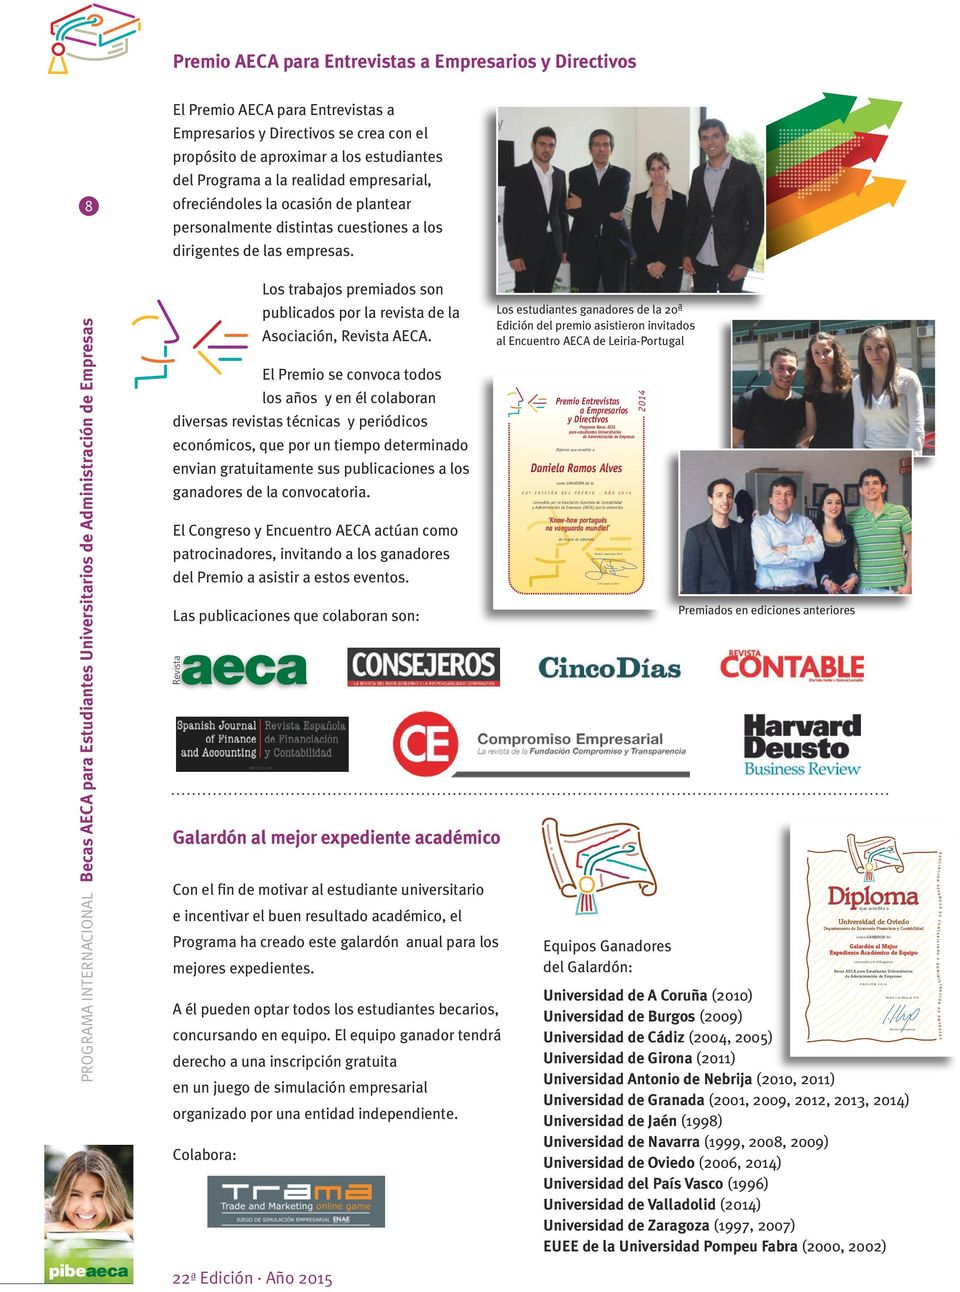 cuestiones a los dirigentes de las empresas. pibeaeca 22ª Edición Año 2015 Los trabajos premiados son publicados por la revista de la Asociación, Revista AECA.